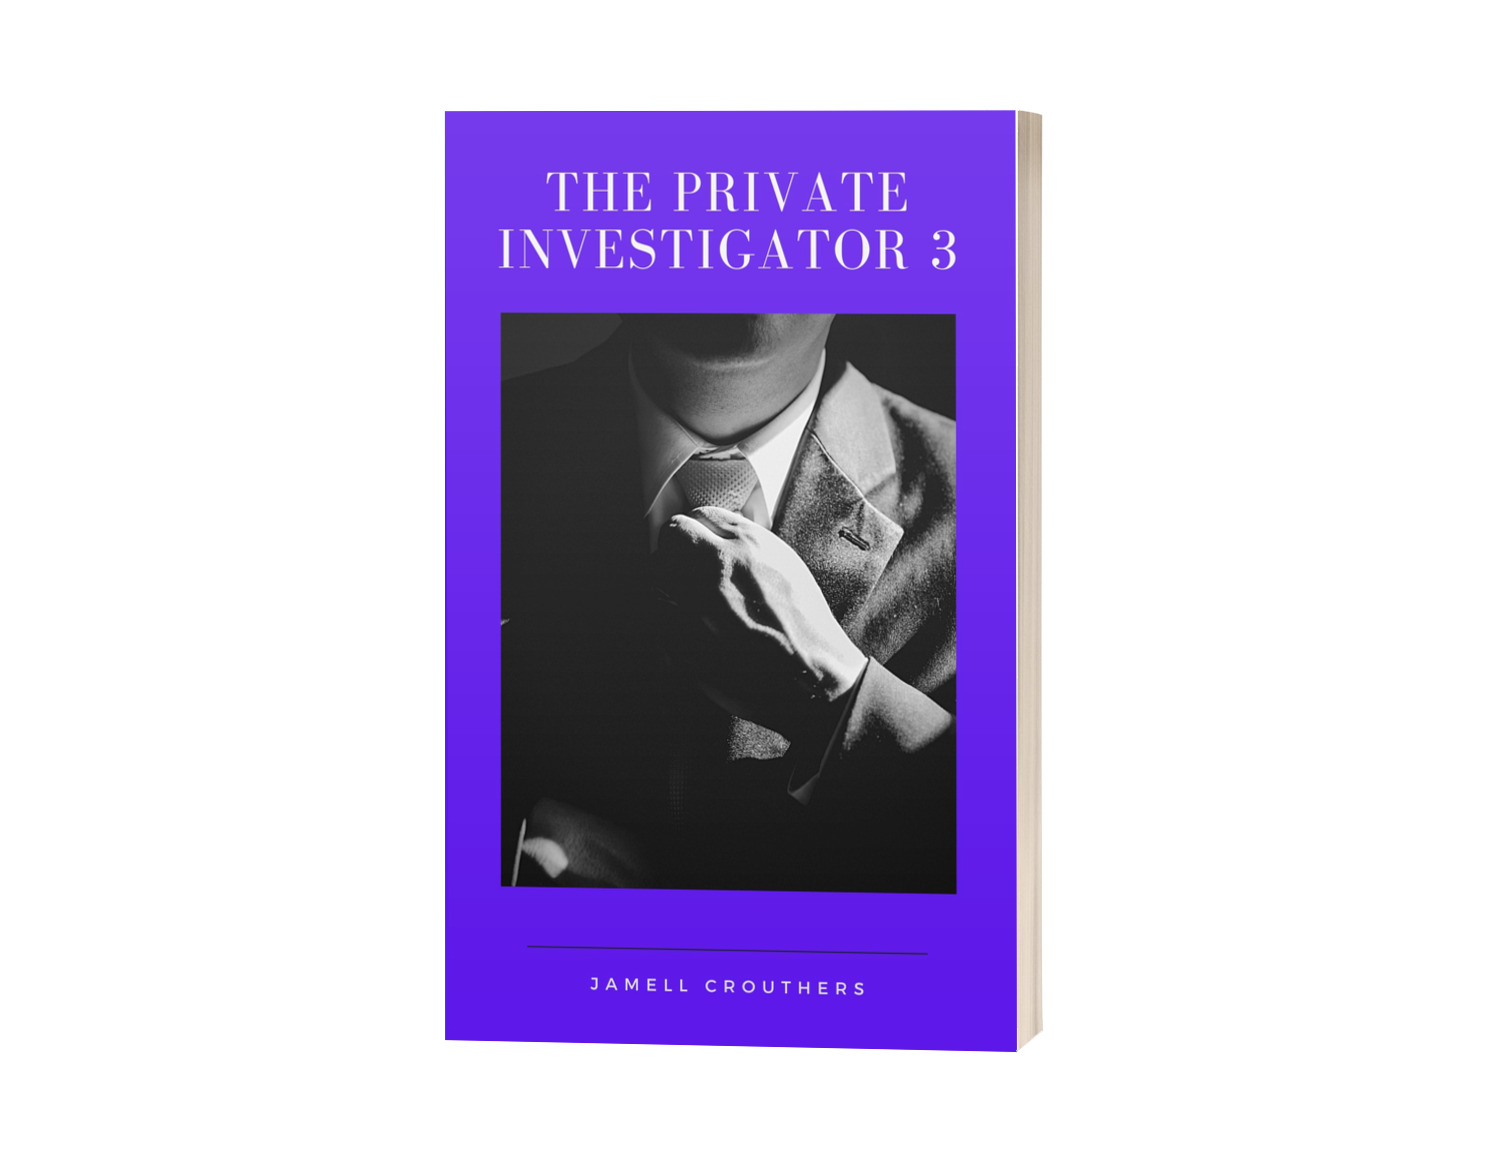 Writing "The Private Investigator 3"